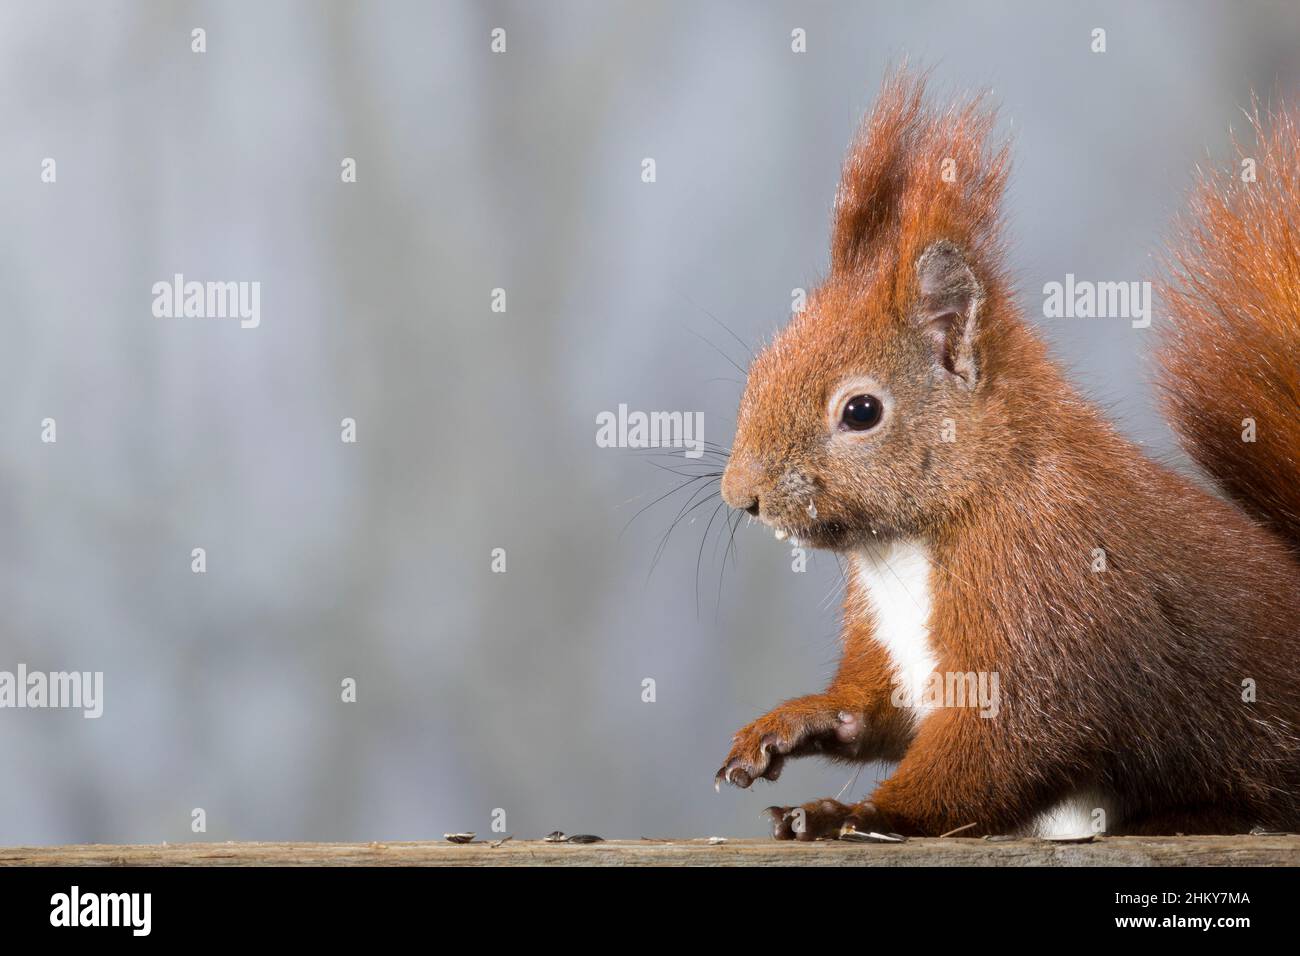 Europäisches Eichhörnchen, Eurasisches Eichhörnchen, Eichhörnchen, frisst Sonnenblumenkerne, Sciurus vulgaris, European red squirrel, red squirrel, L' Stock Photo